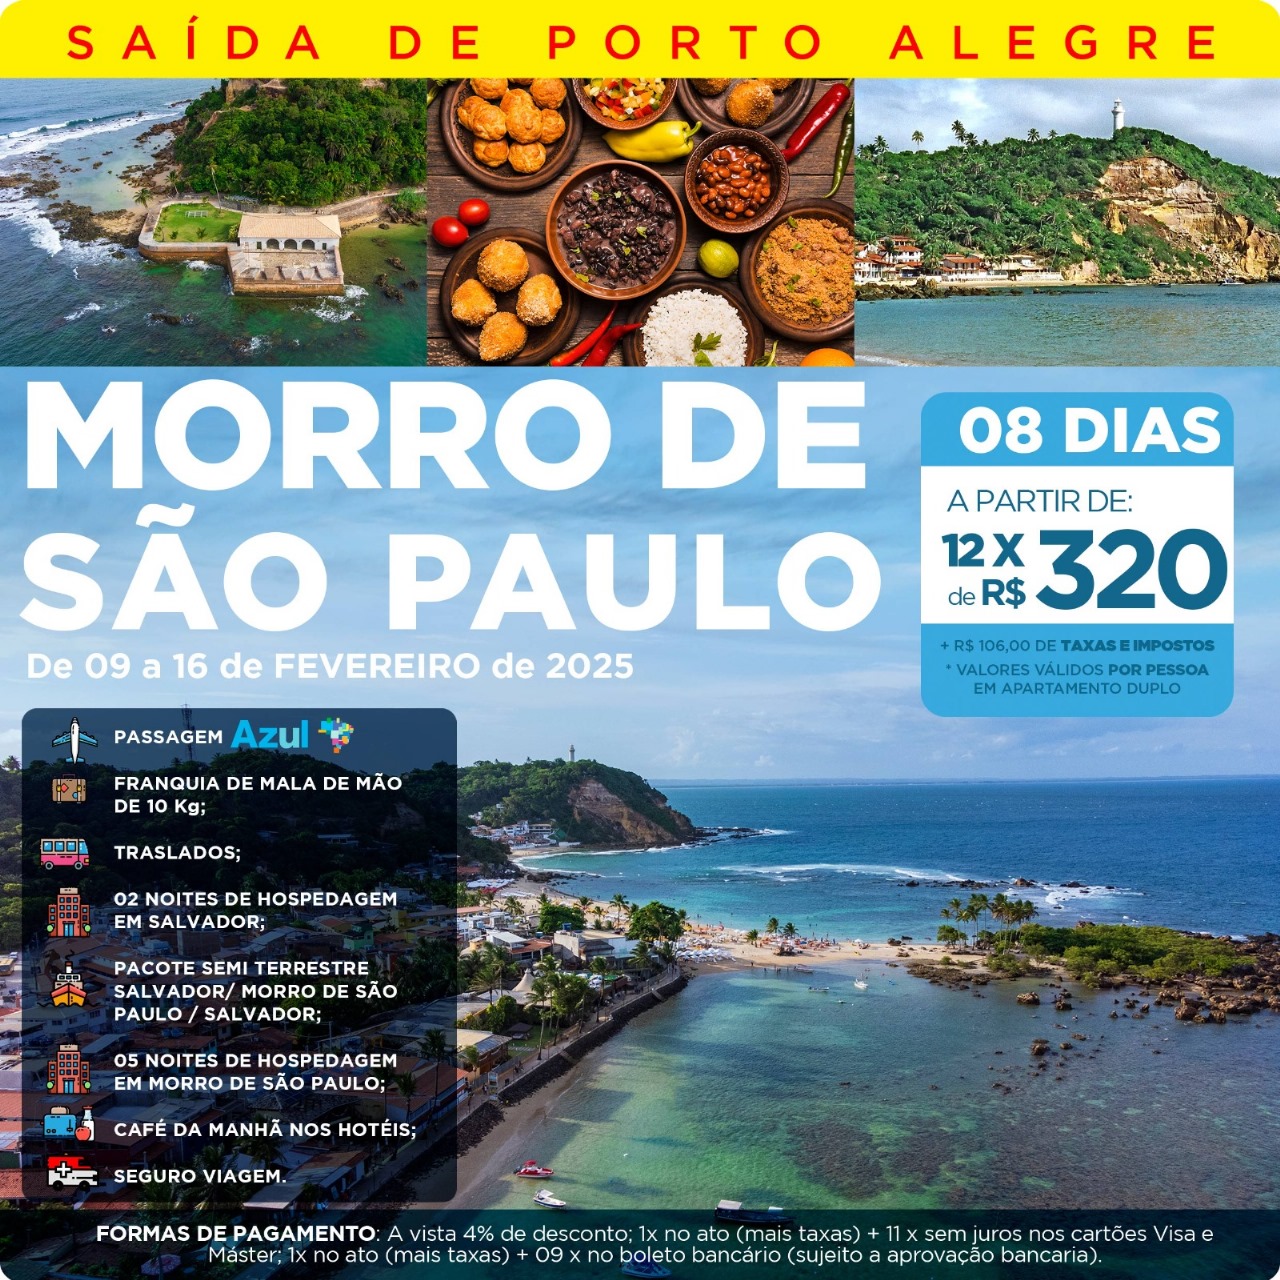 MORRO DE SÃO PAULO - BA